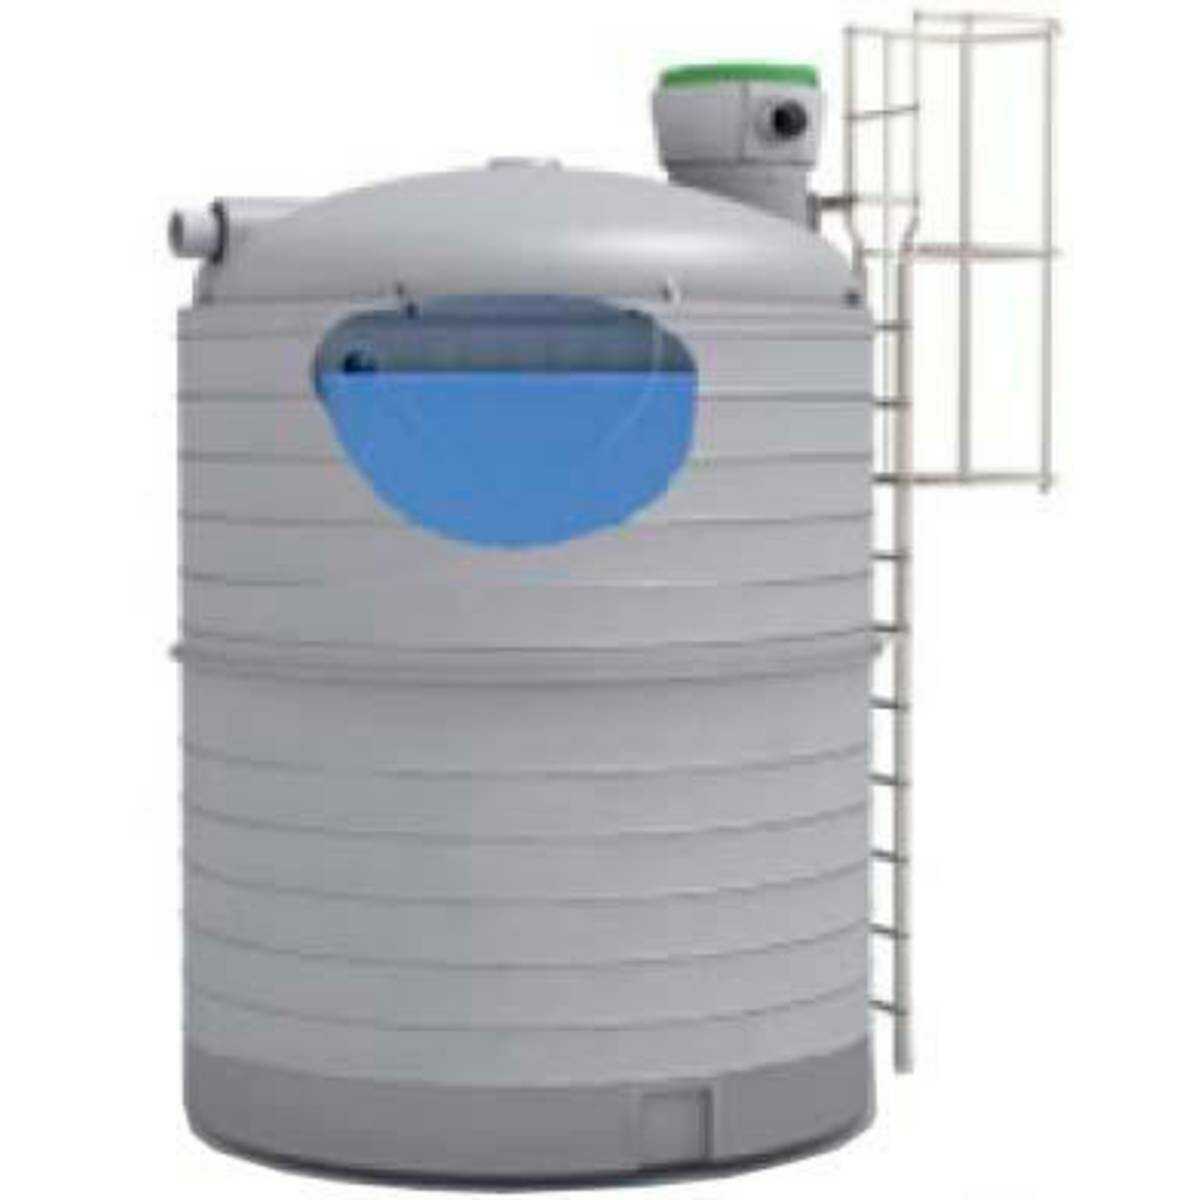 Récupérateur d'eau de pluie aérien Vertic'eau